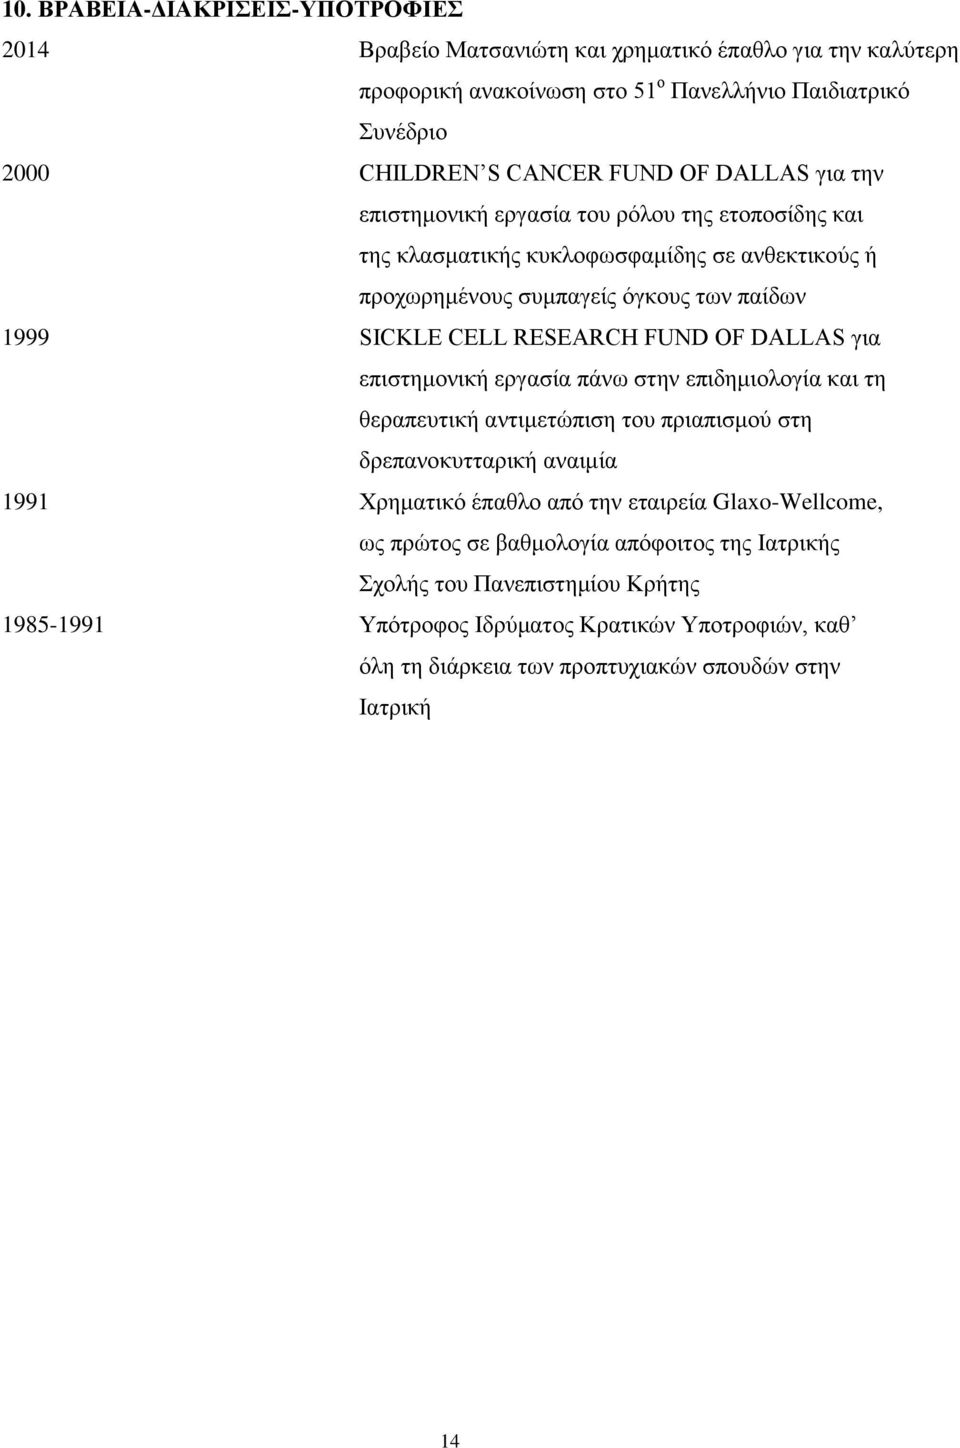 OF DALLAS για επιστημονική εργασία πάνω στην επιδημιολογία και τη θεραπευτική αντιμετώπιση του πριαπισμού στη δρεπανοκυτταρική αναιμία 1991 Χρηματικό έπαθλο από την εταιρεία